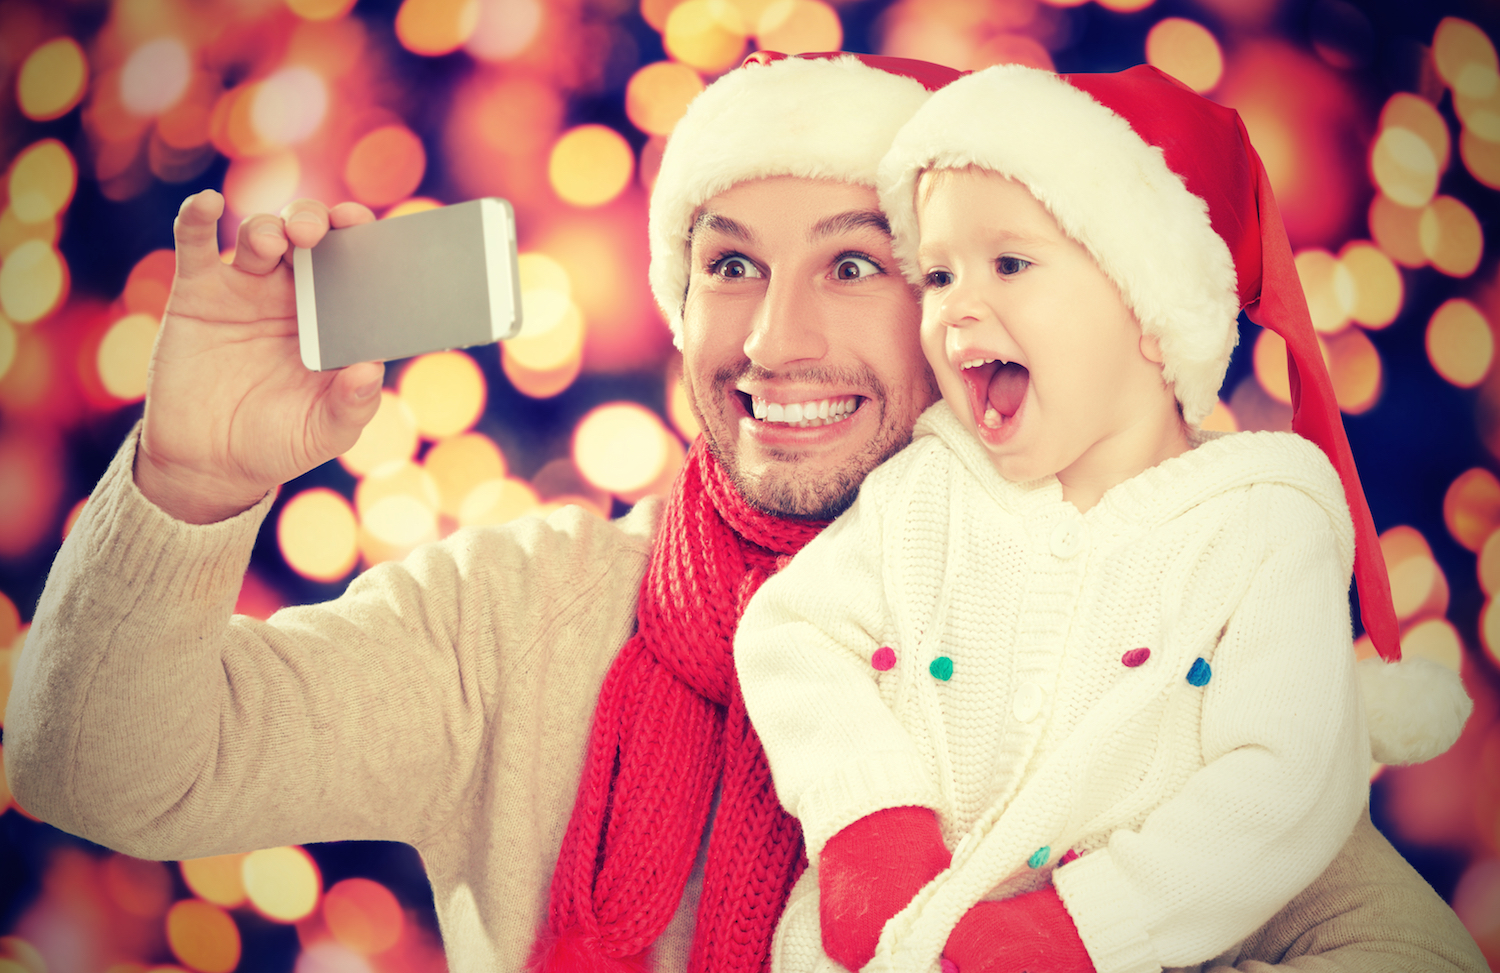  Consejos para lograr una buena foto familiar en Navidad